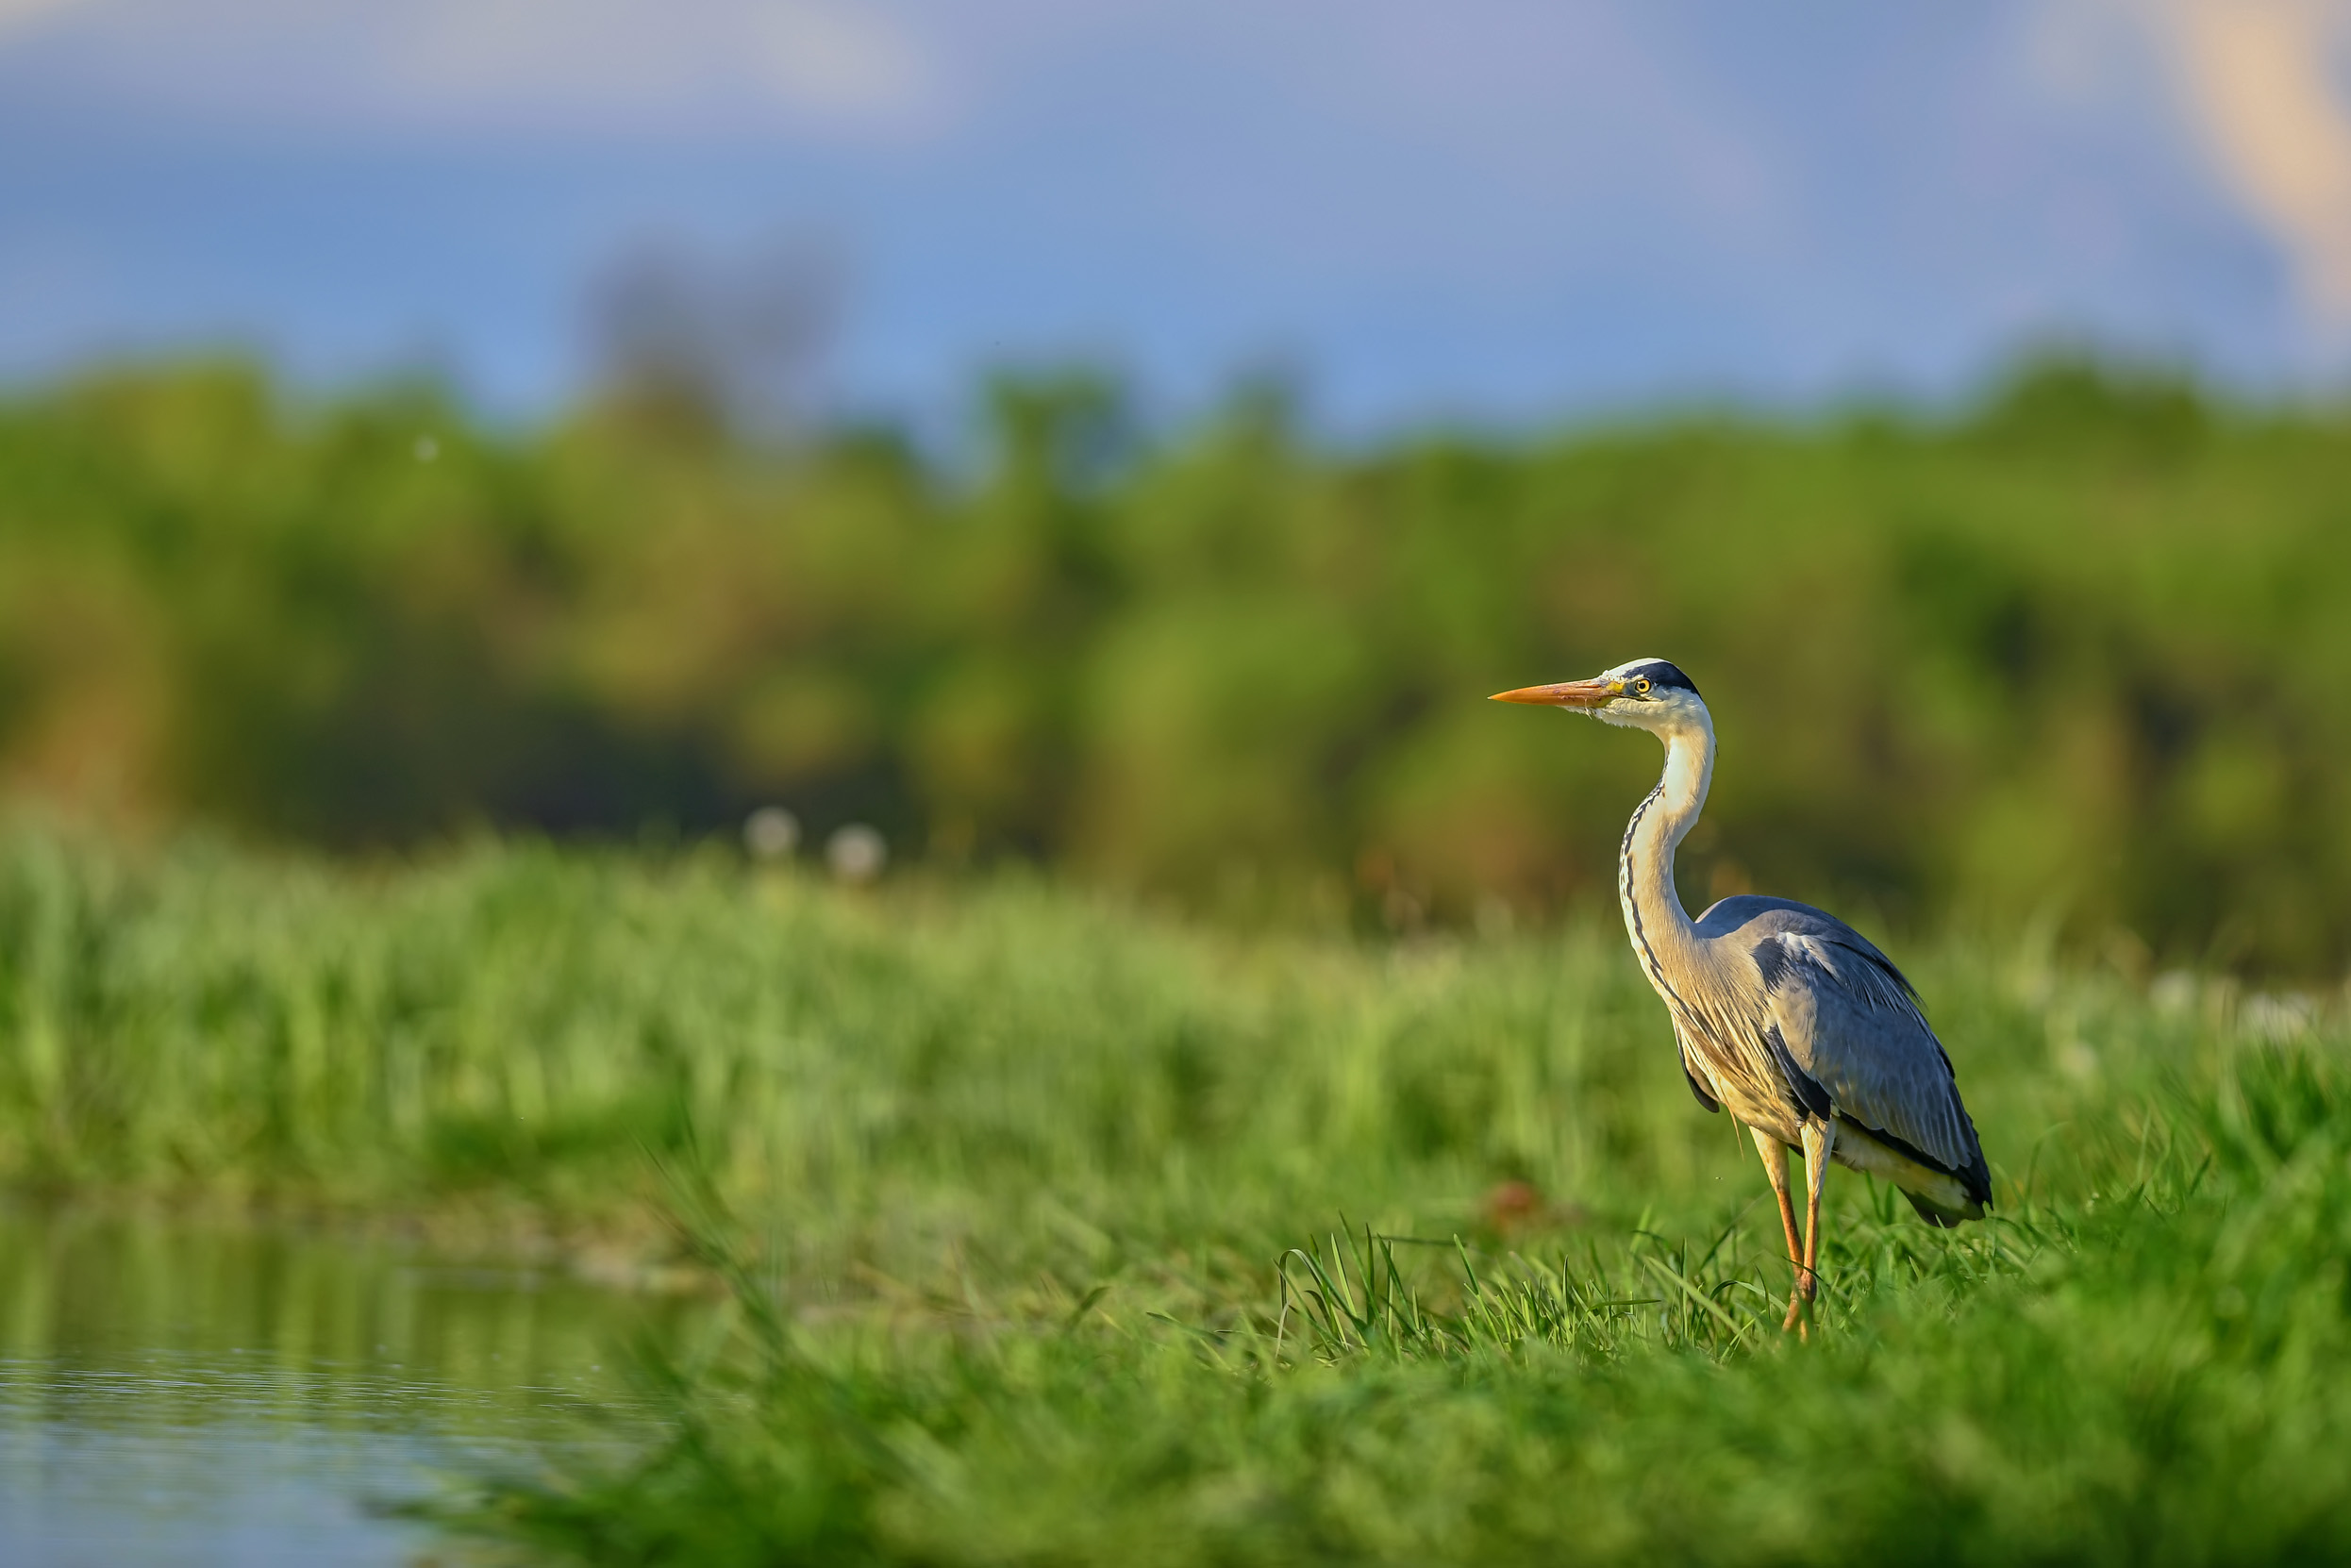 A lone Grey Heron stood between the reeds at a lake.